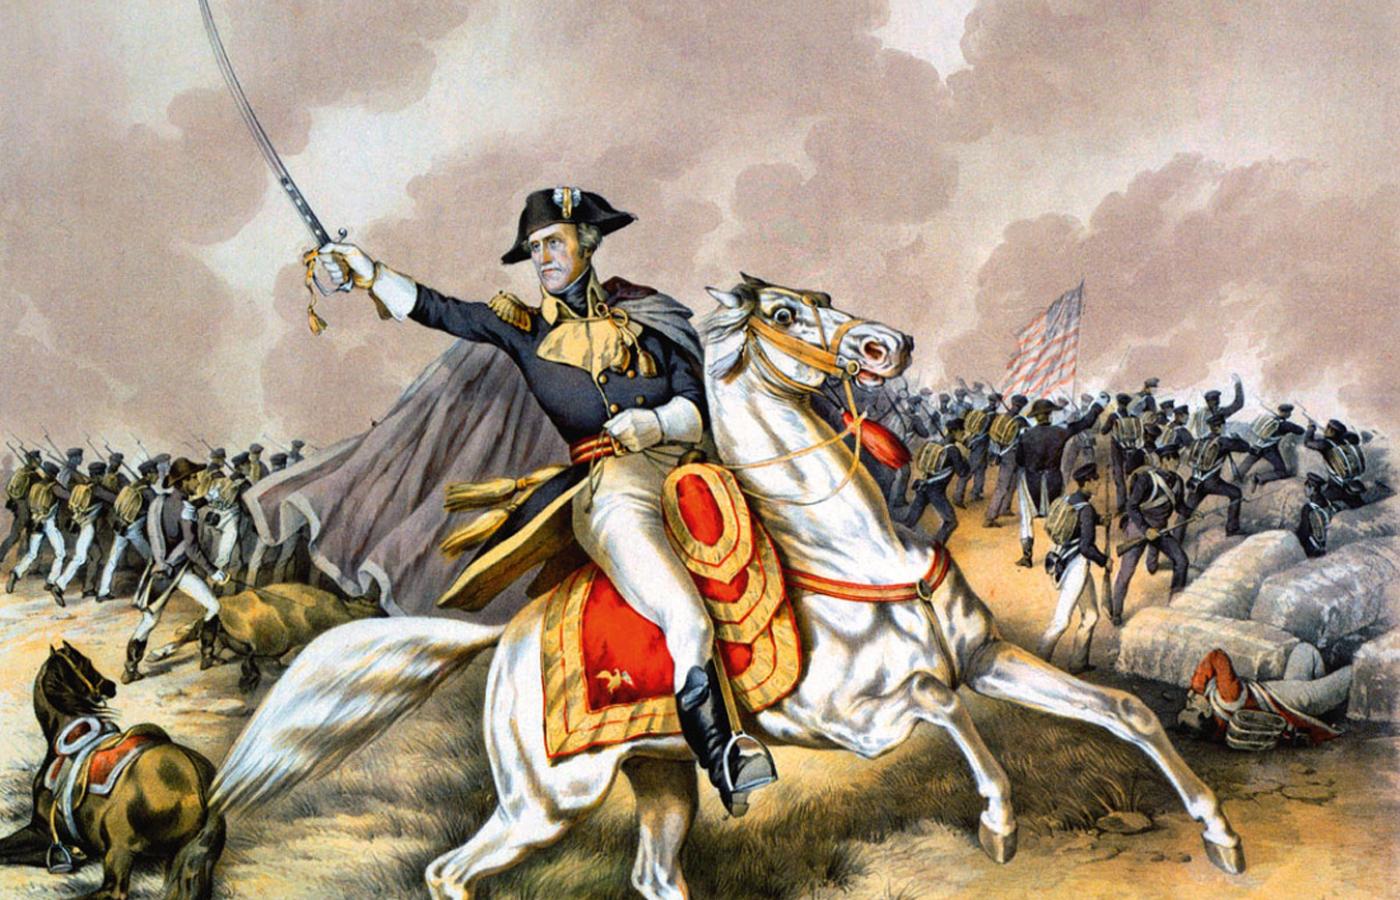 Gen. Andrew Jackson, późniejszy ekspansywny prezydent, nazywany przez wrogów królem Andrzejem, w bitwie pod Nowym Orleanem w 1815 r.; litografia z 1856 r.